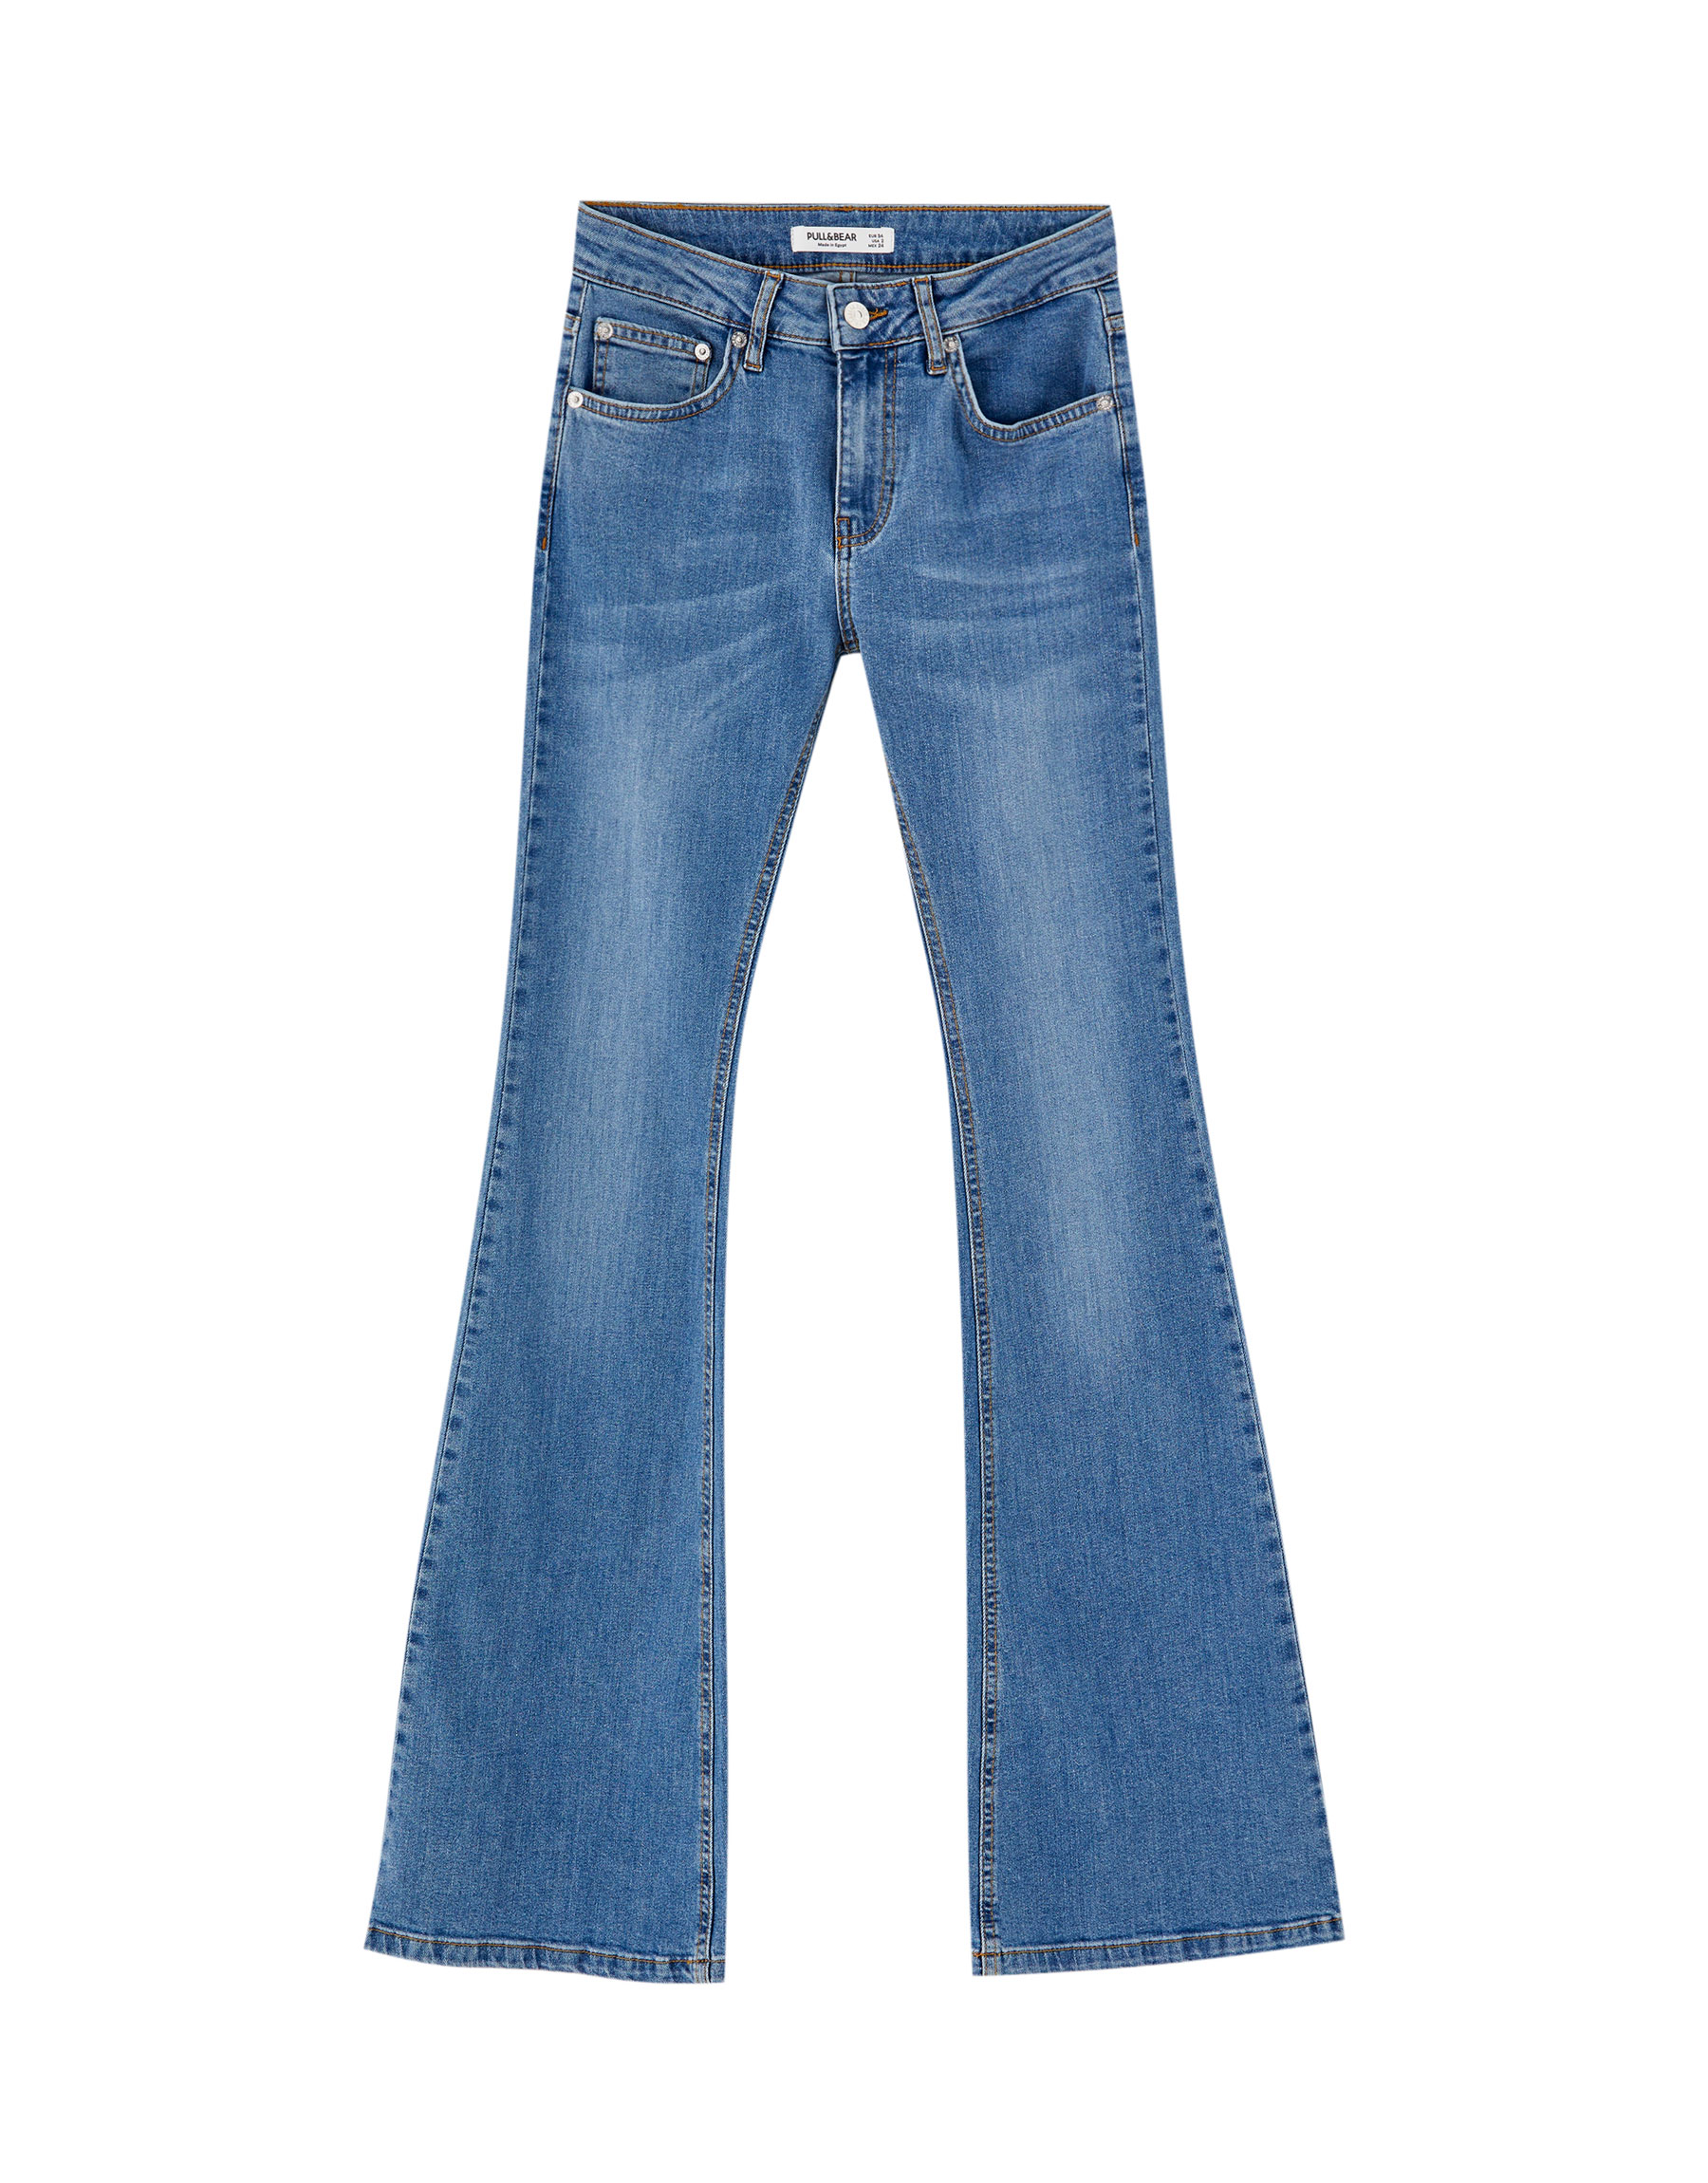 СИНИЙ Расклешенные джинсы со средней посадкой Pull & Bear